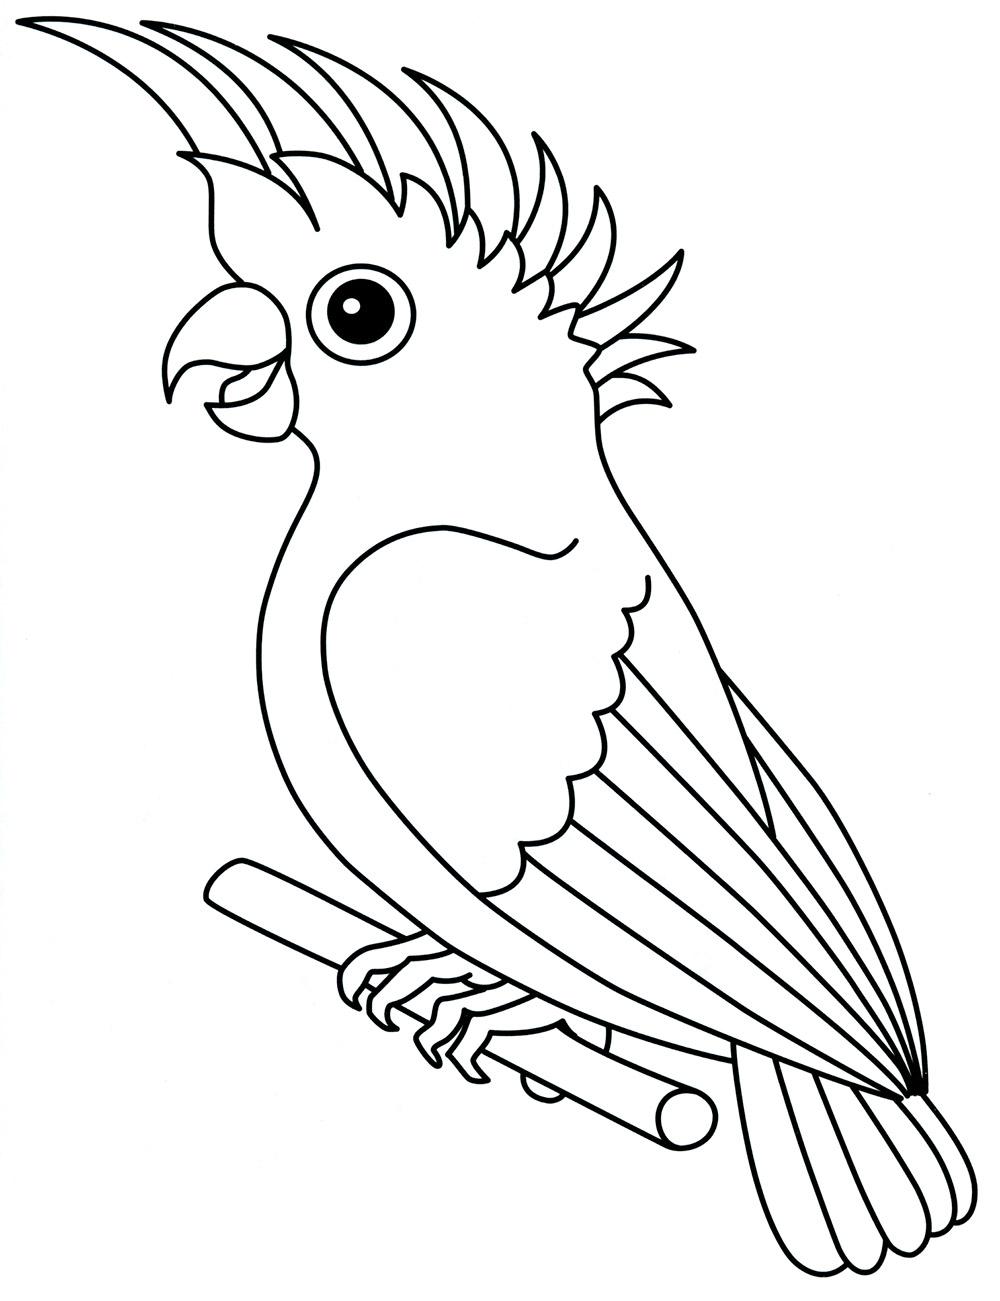  Раскраска попугай с хохолком